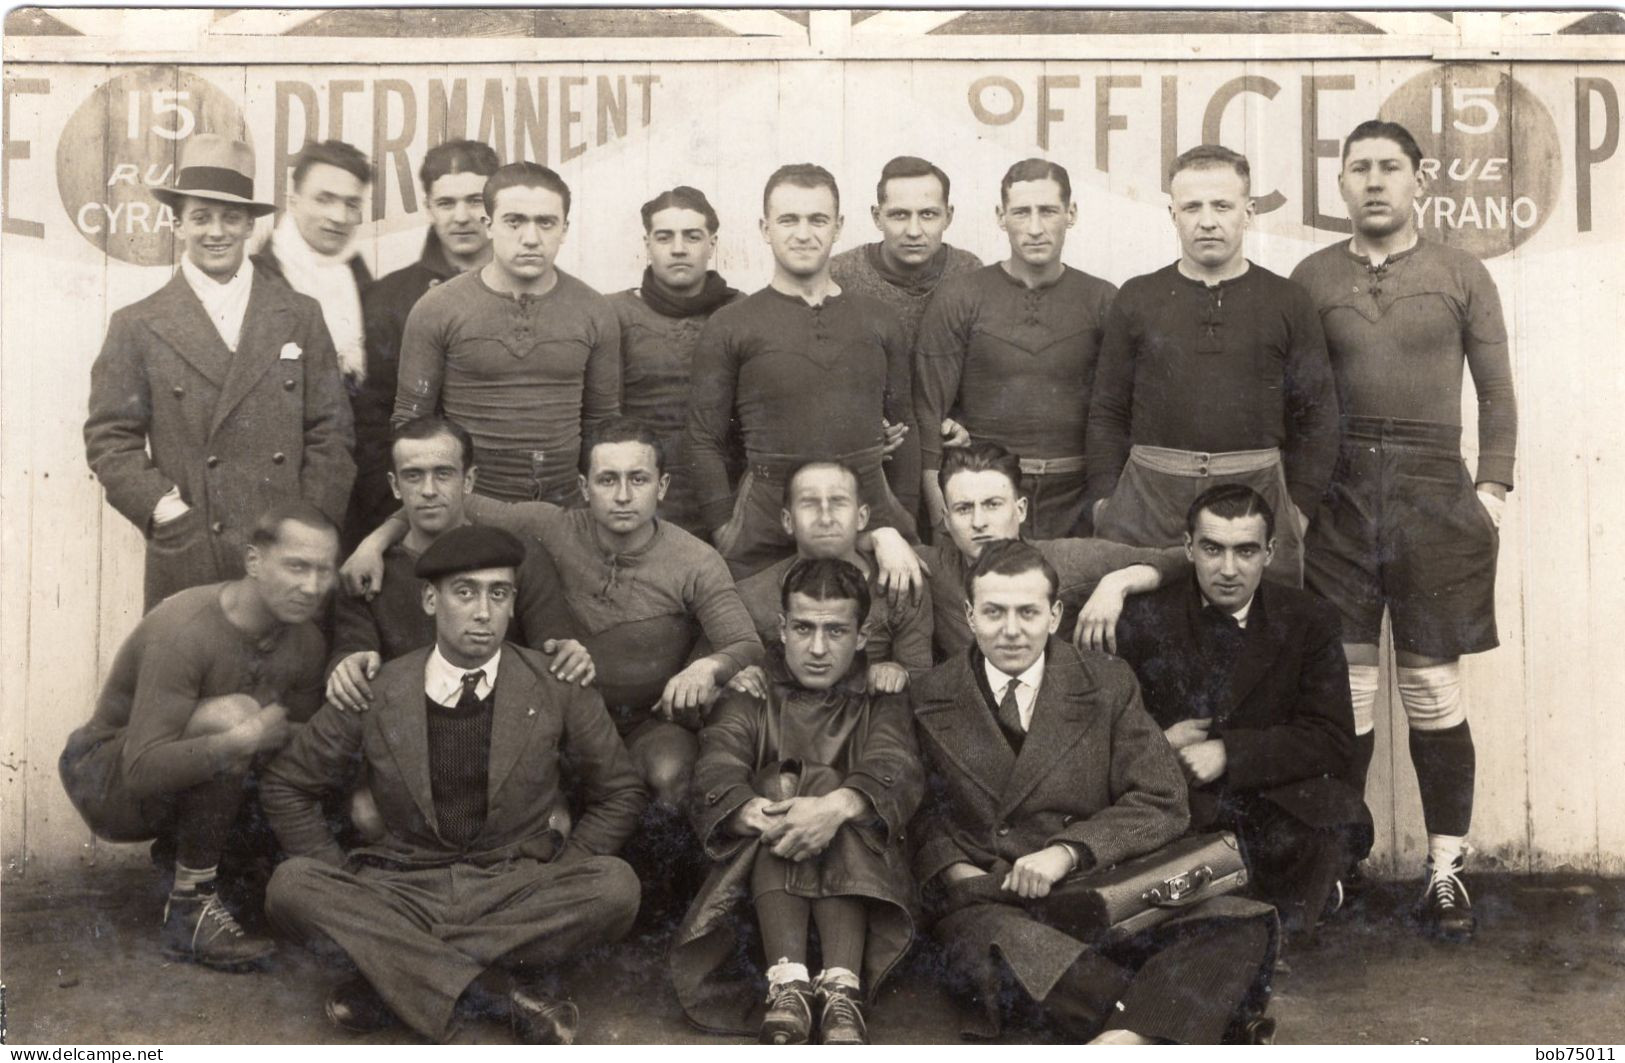 Carte Photo D'hommes ( Une équipe De Foot ) Avec Leurs Entraineur Posant Vers 1930 - Identifizierten Personen